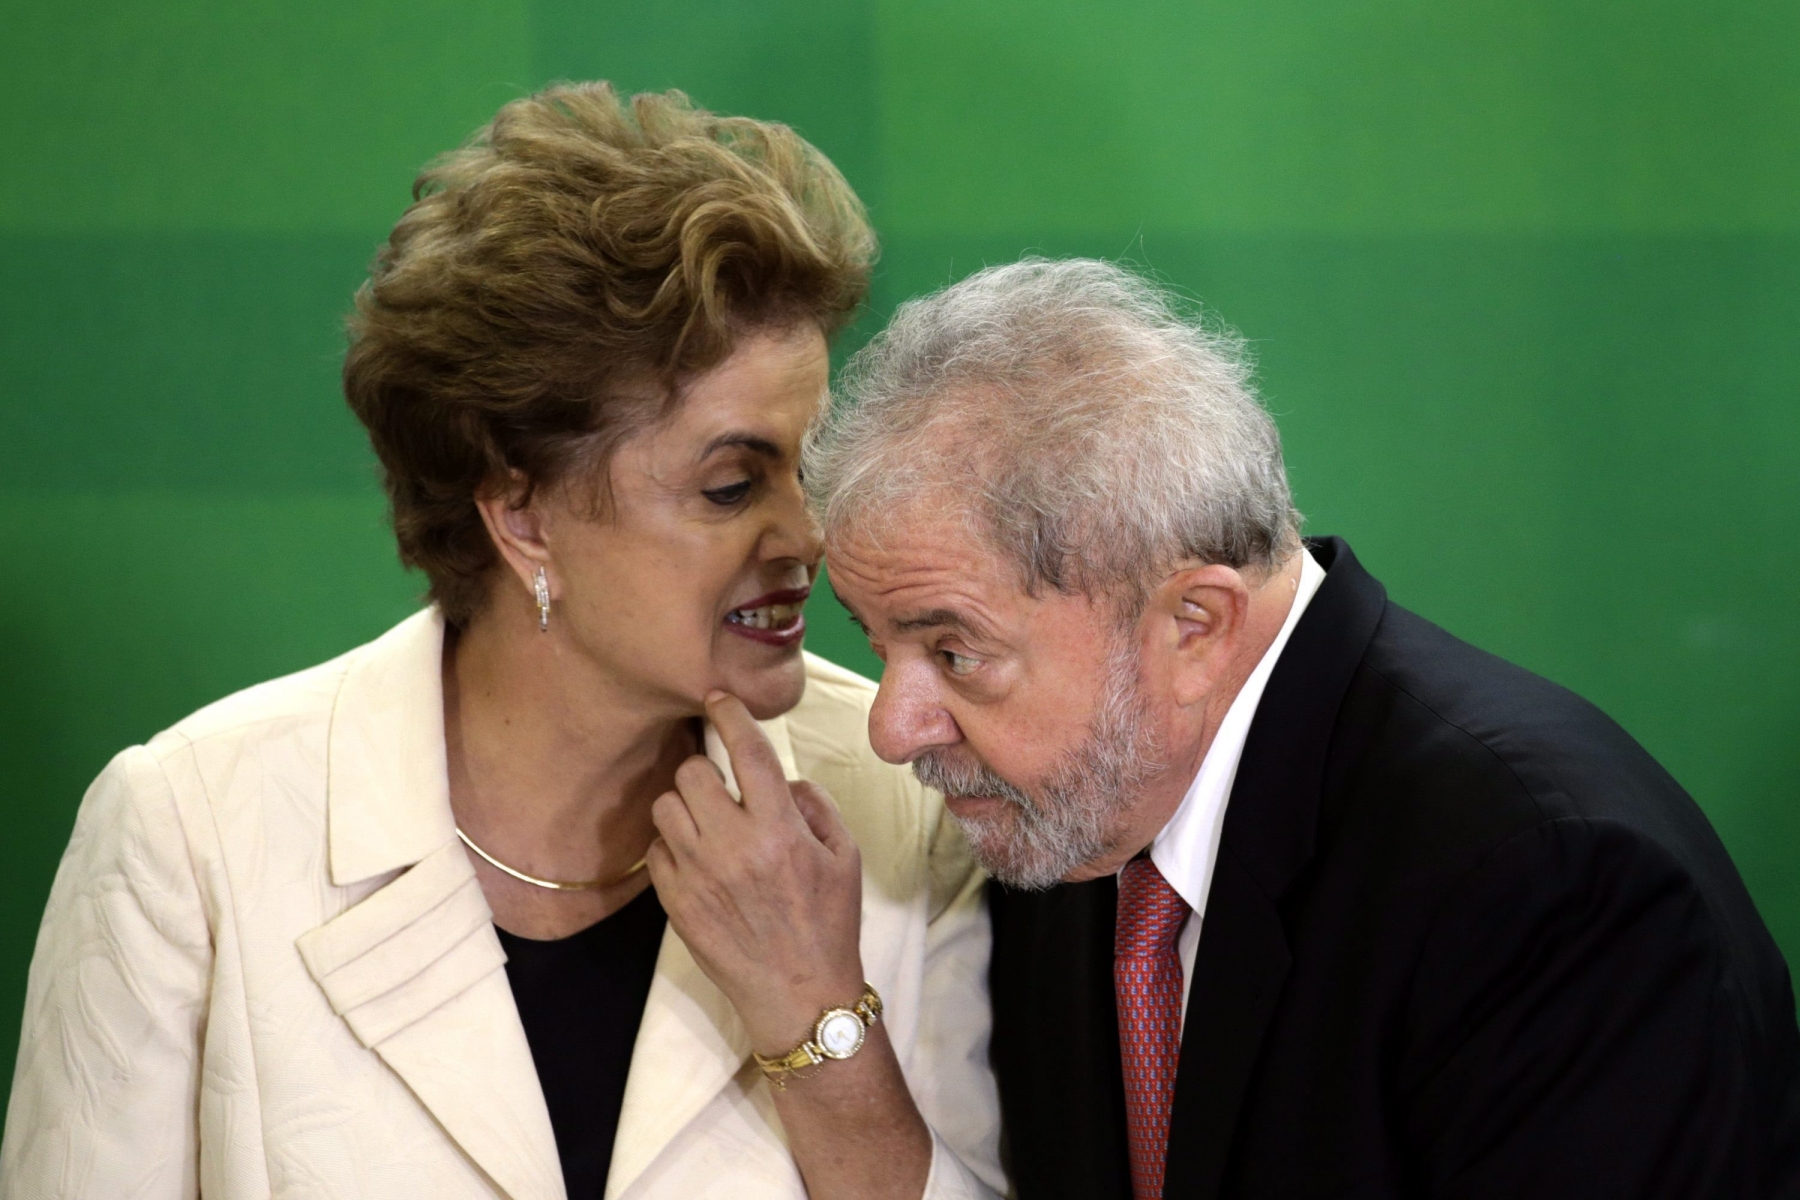 L'ancien président est accusé des mêmes travers que Dilma Rousseff, destituée il y a peu.